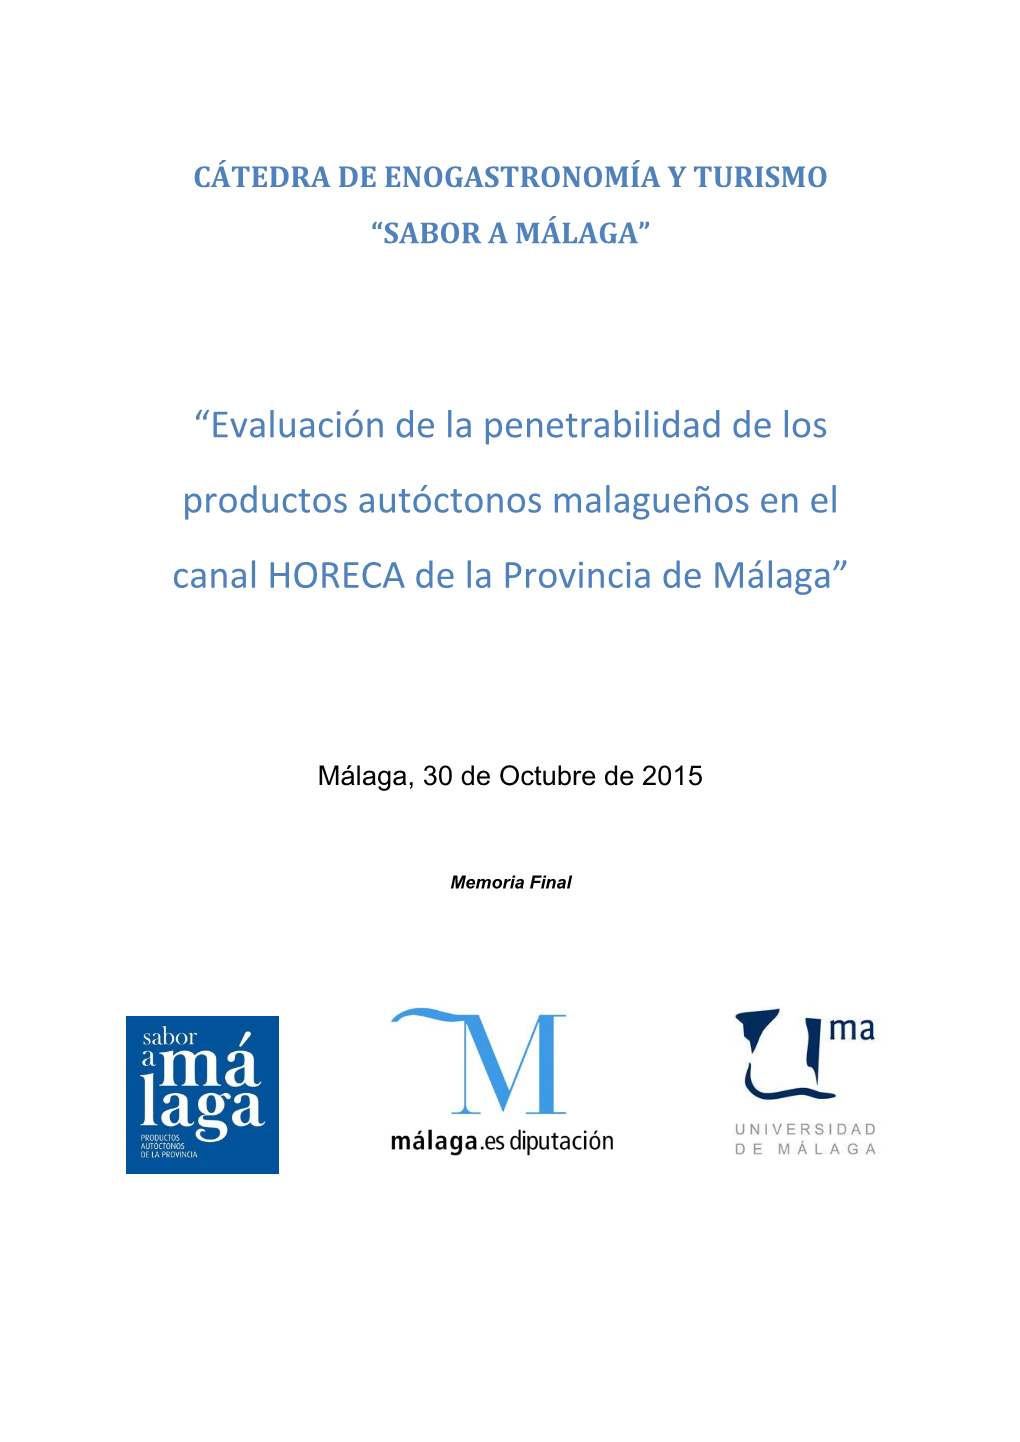 Evaluación De La Penetrabilidad De Los Productos Autóctonos Malagueños En El Canal HORECA De La Provincia De Málaga”